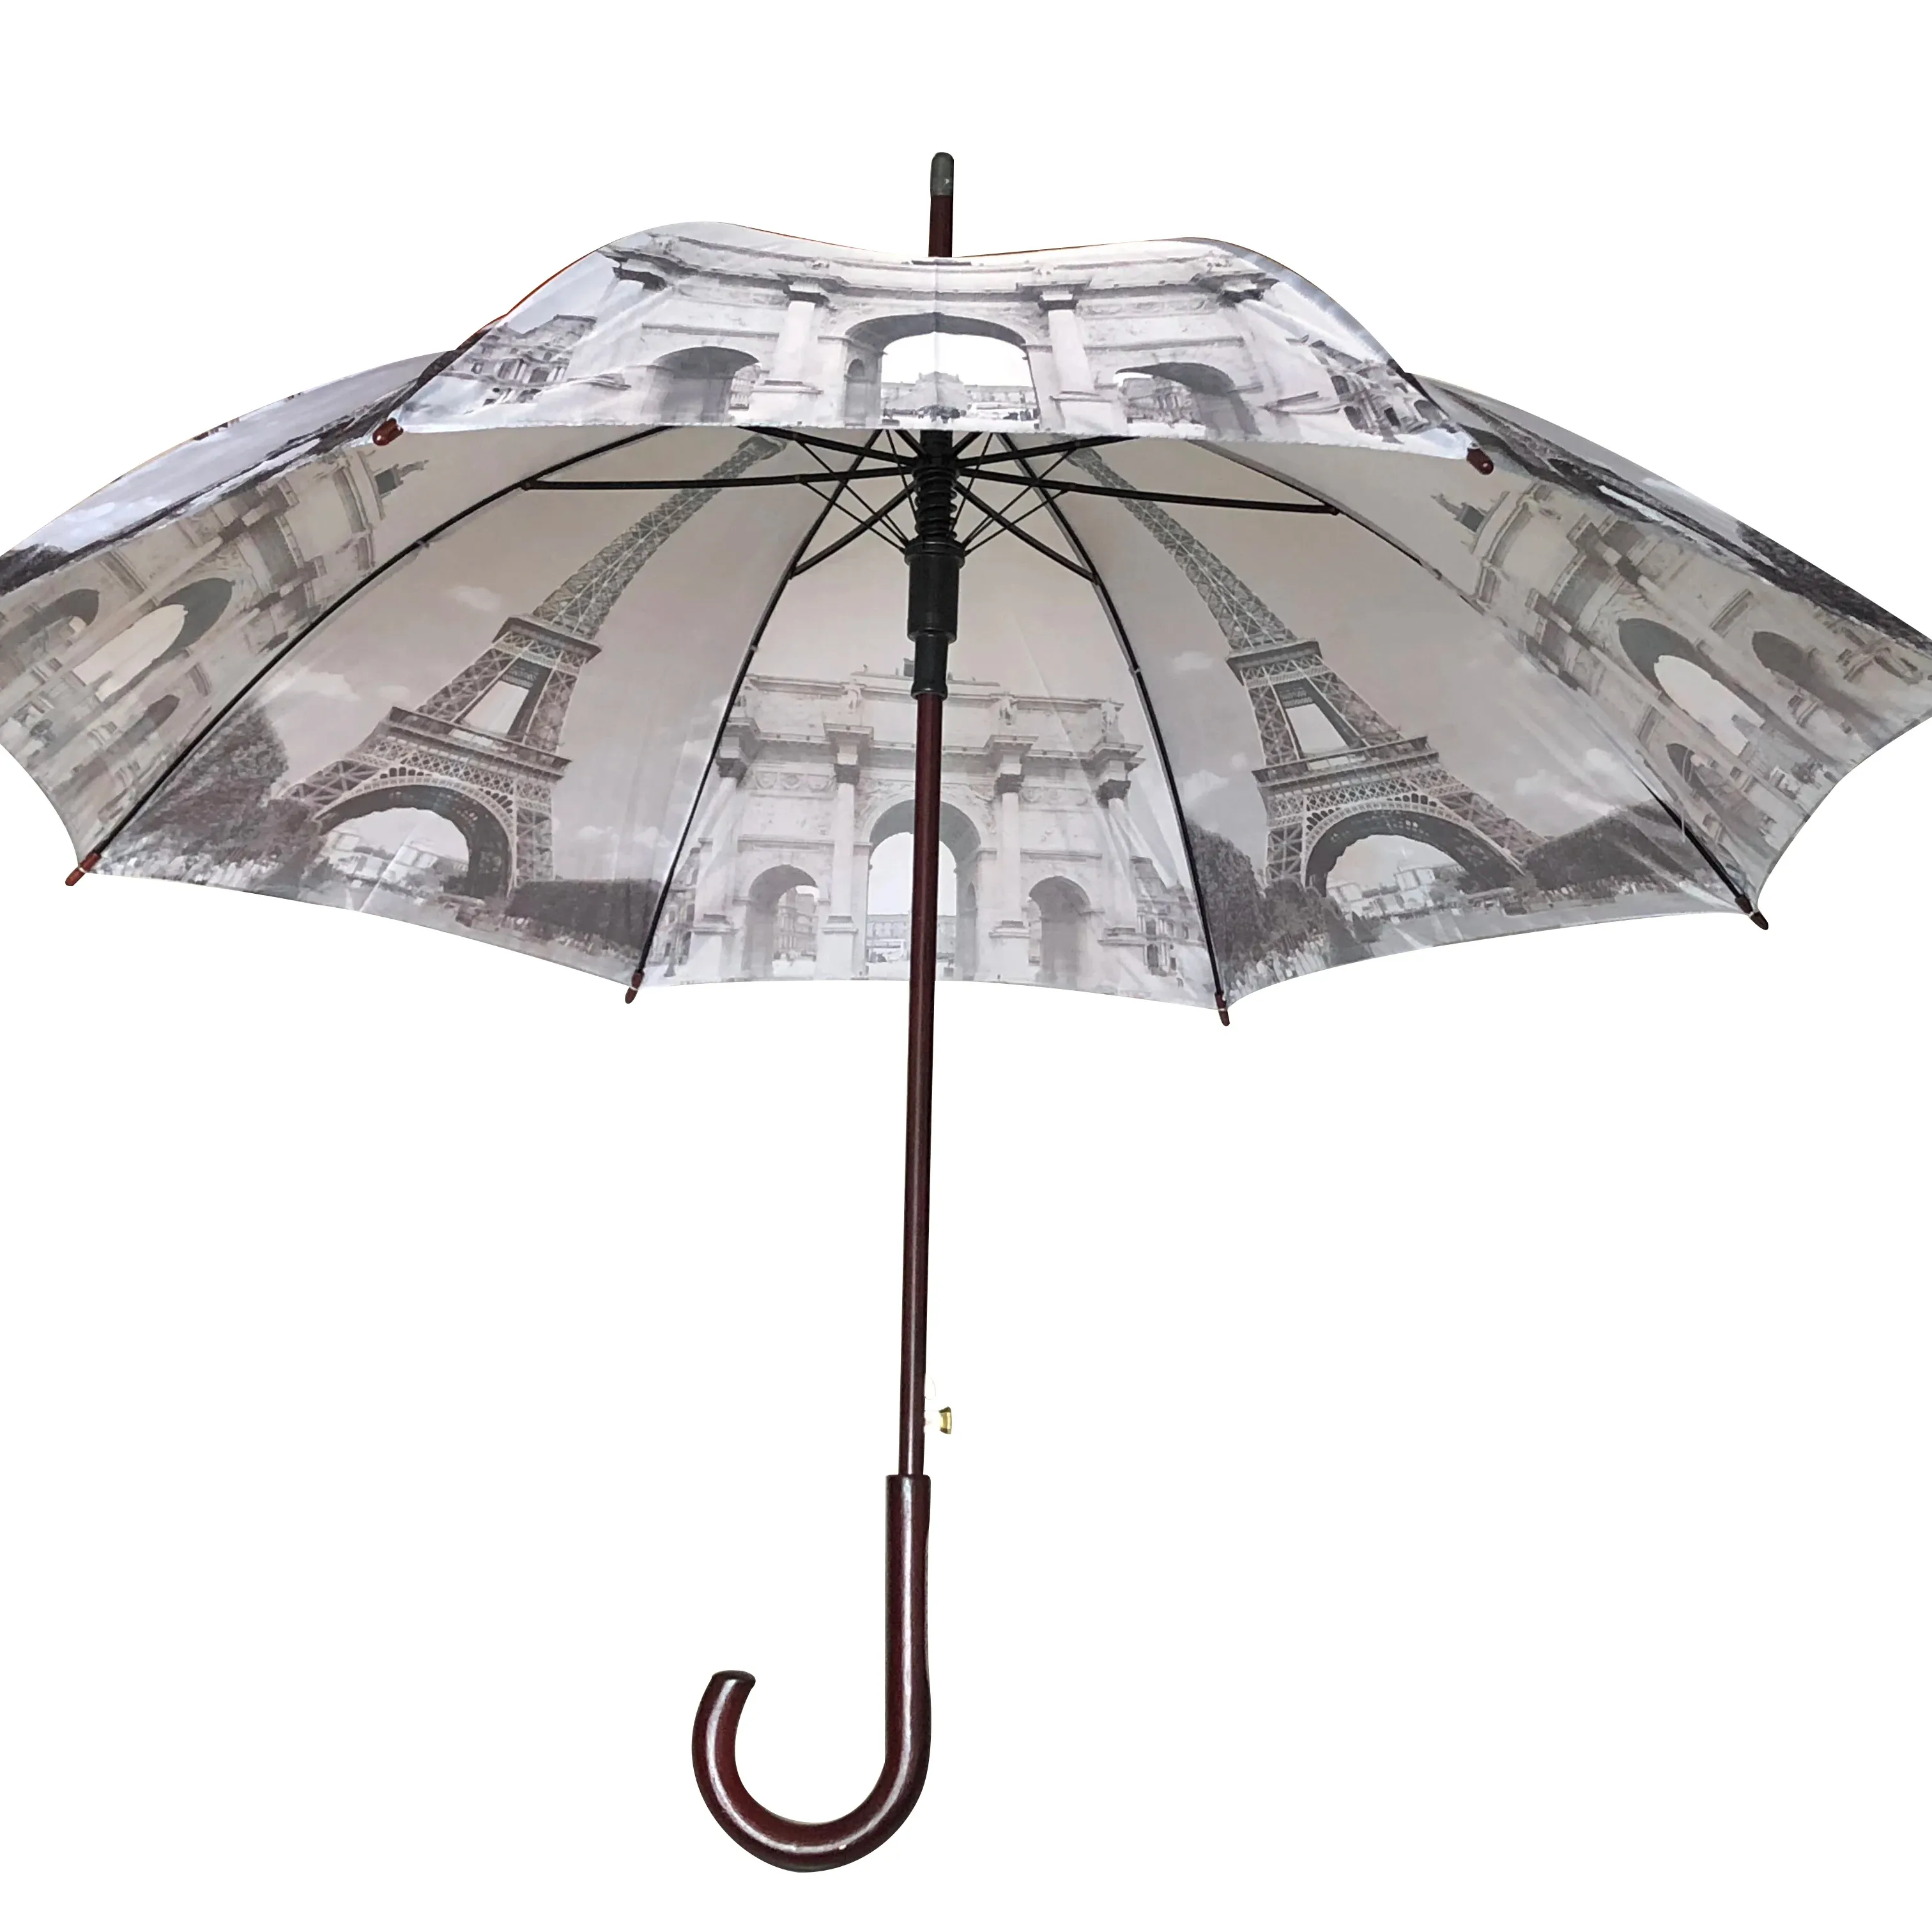 Özel Logo uzun fiberglas çerçeve sopa beyaz şemsiye J kolu ile özel düz şemsiye yağmur için